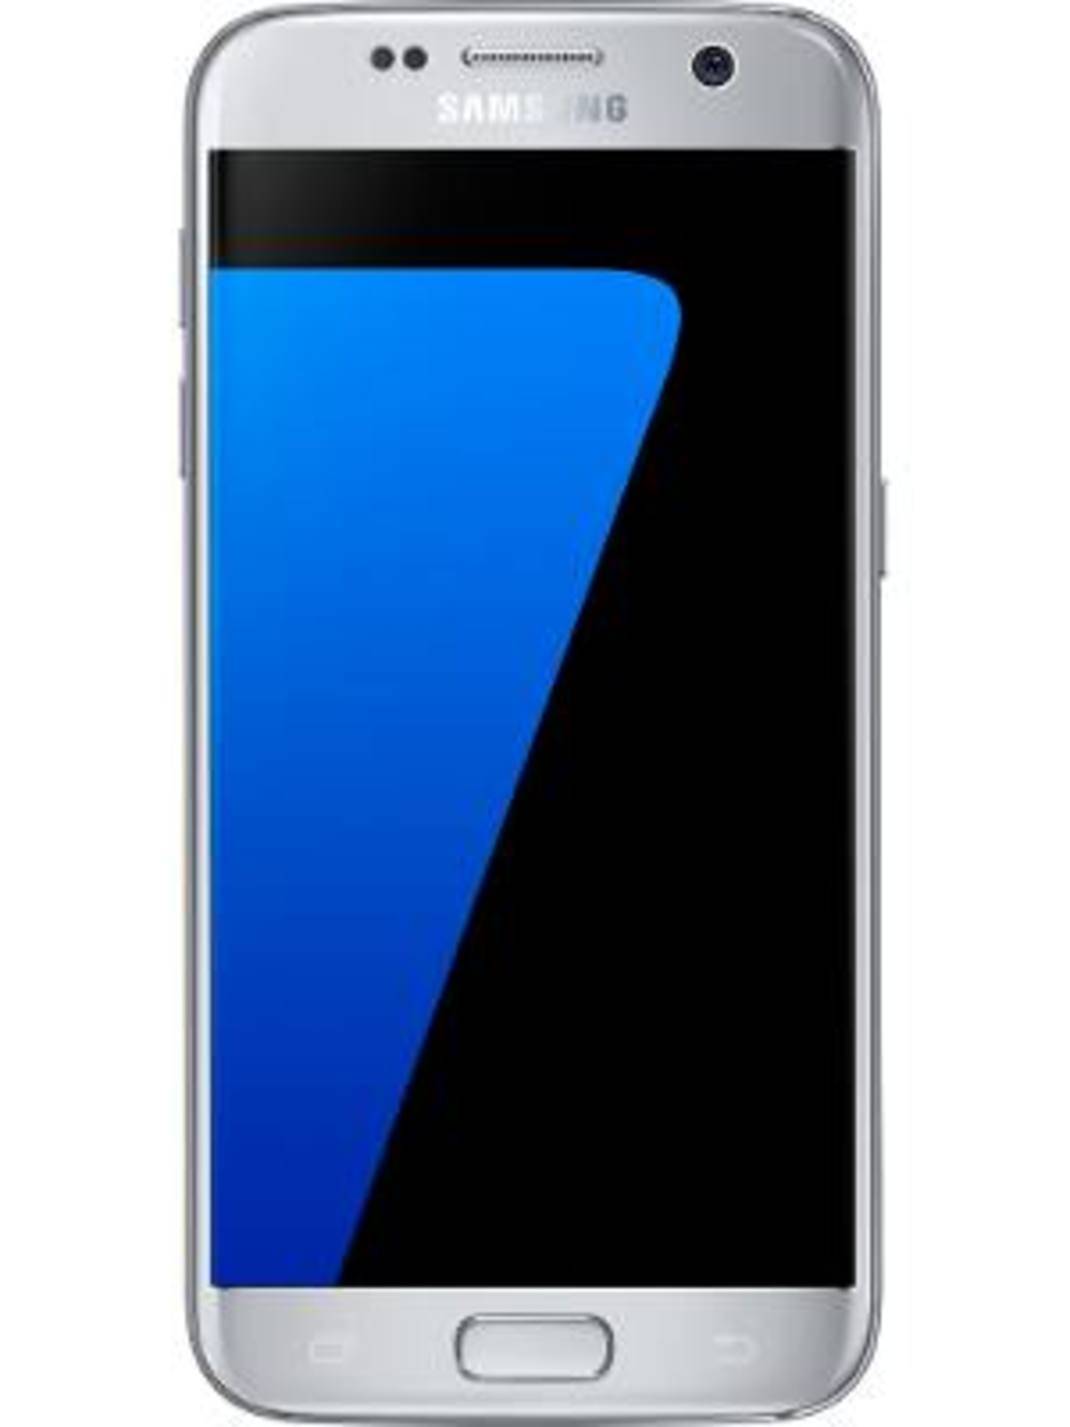 Vooroordeel Kreunt Horen van Samsung Galaxy S7 64GB vs Samsung Galaxy S7 Edge 64GB: Compare  Specifications, Price | Gadgets Now